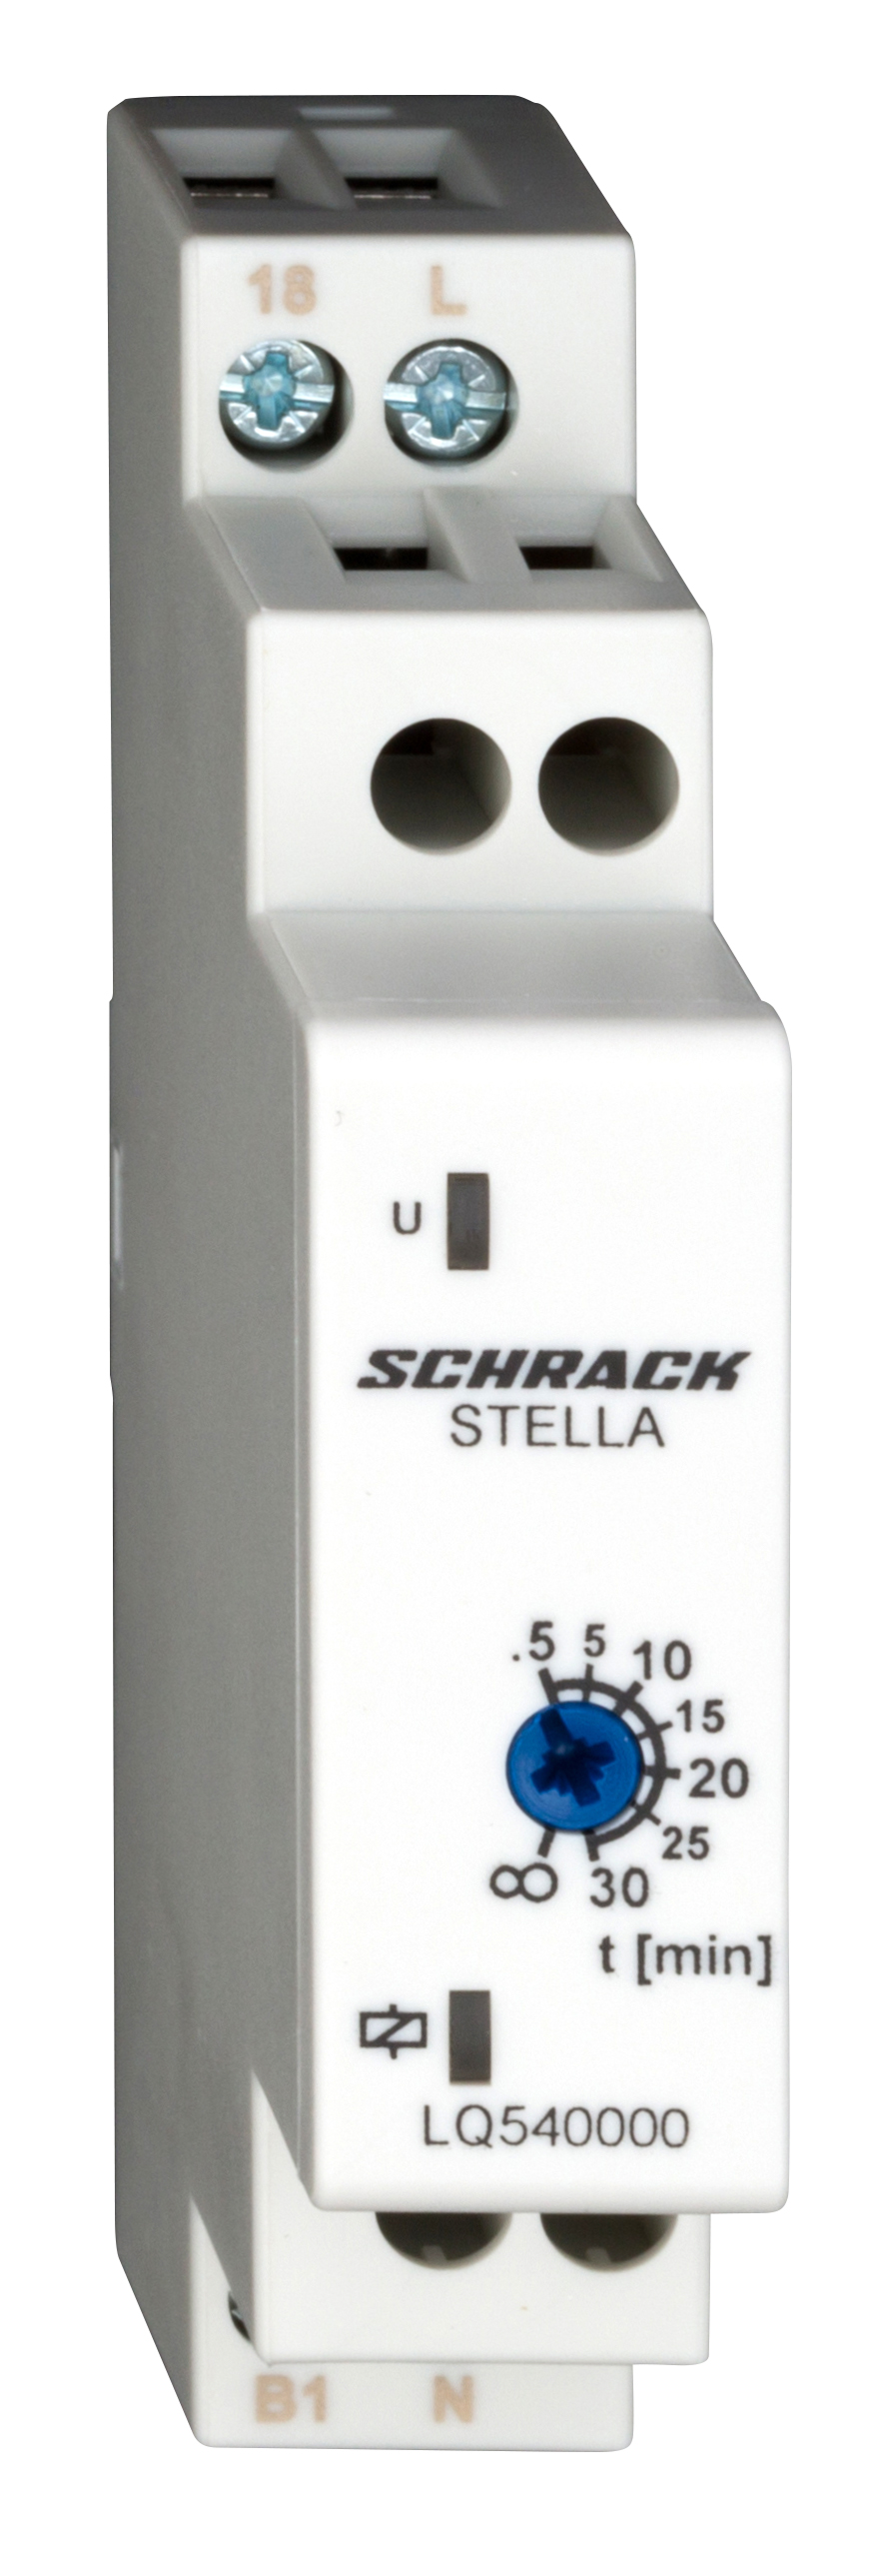 Foto: STELLA, elektronischer Fernschalter, Reiheneinbau (c) Schrack